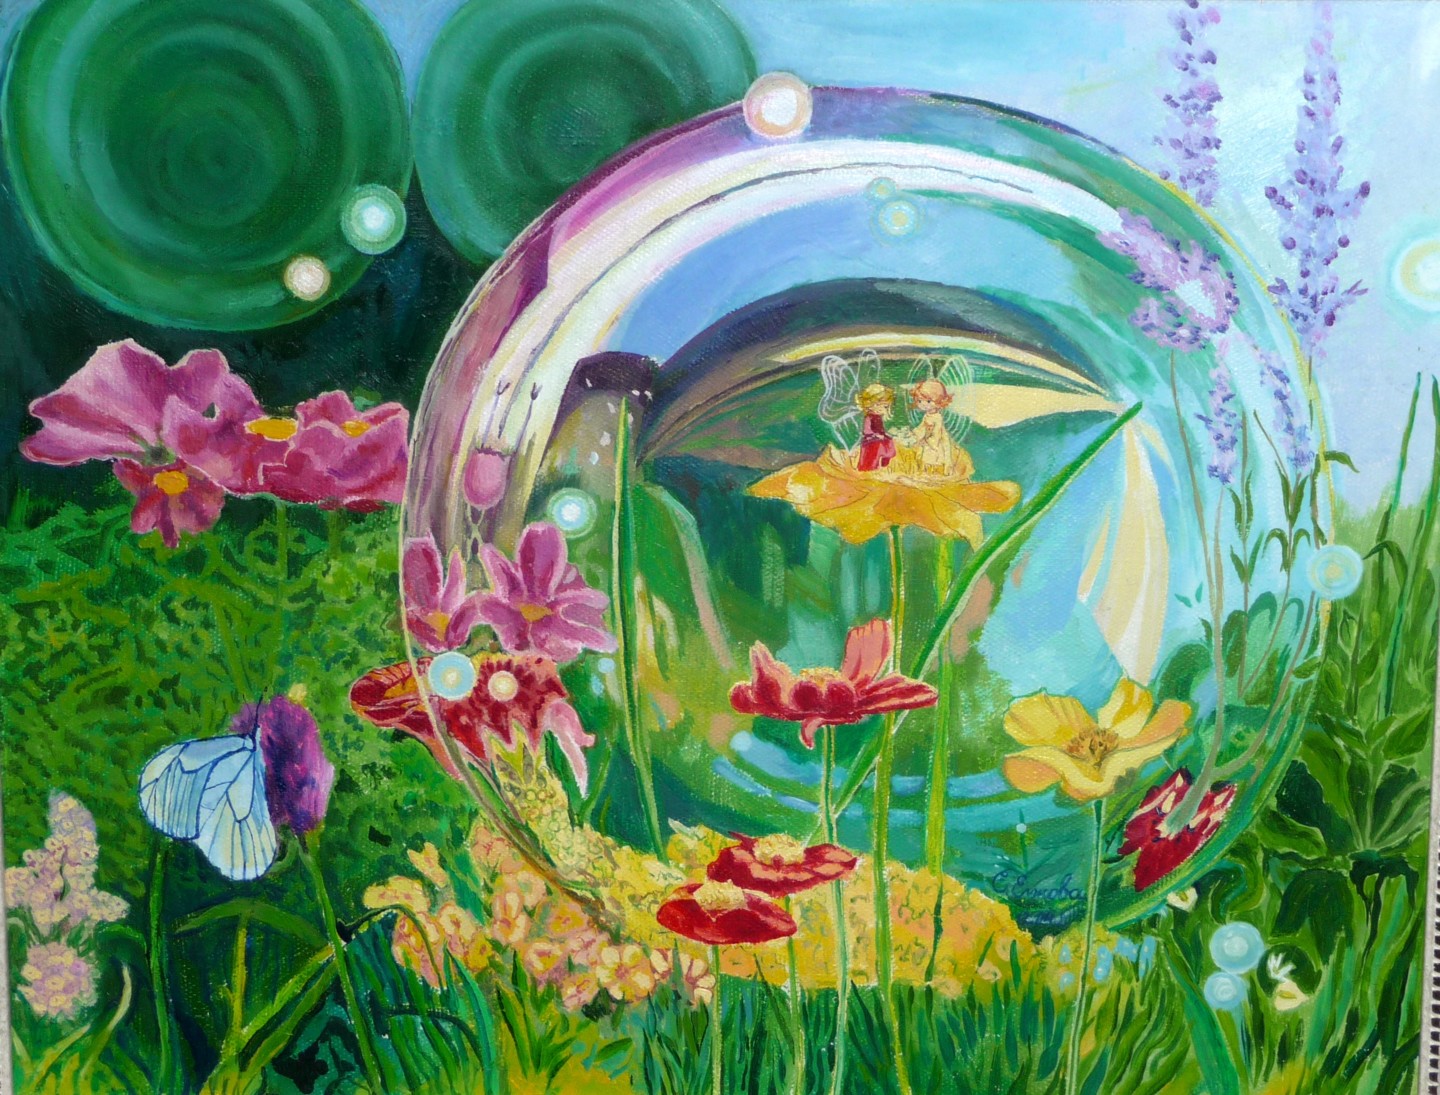 Сказка цветок жизни. Сказочная вода. Чудесный мир воды. Сказочные цветы детей в детском саду. Волшебные краски весны.